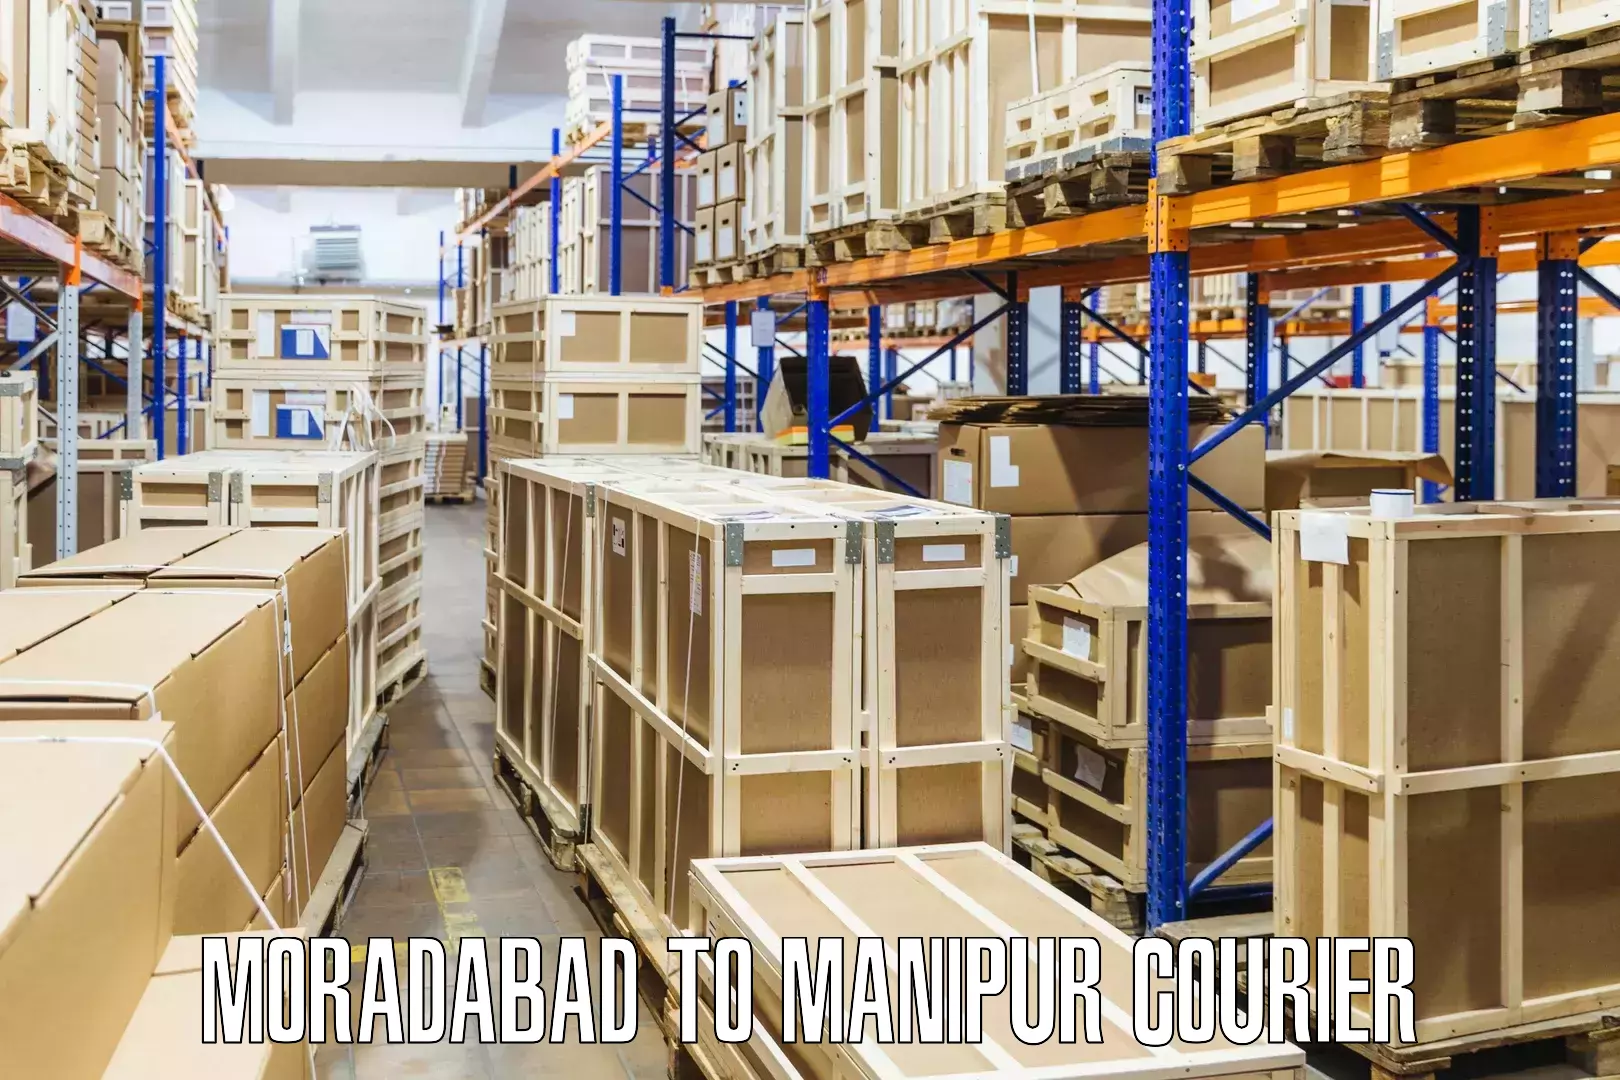 Affordable parcel service Moradabad to Manipur